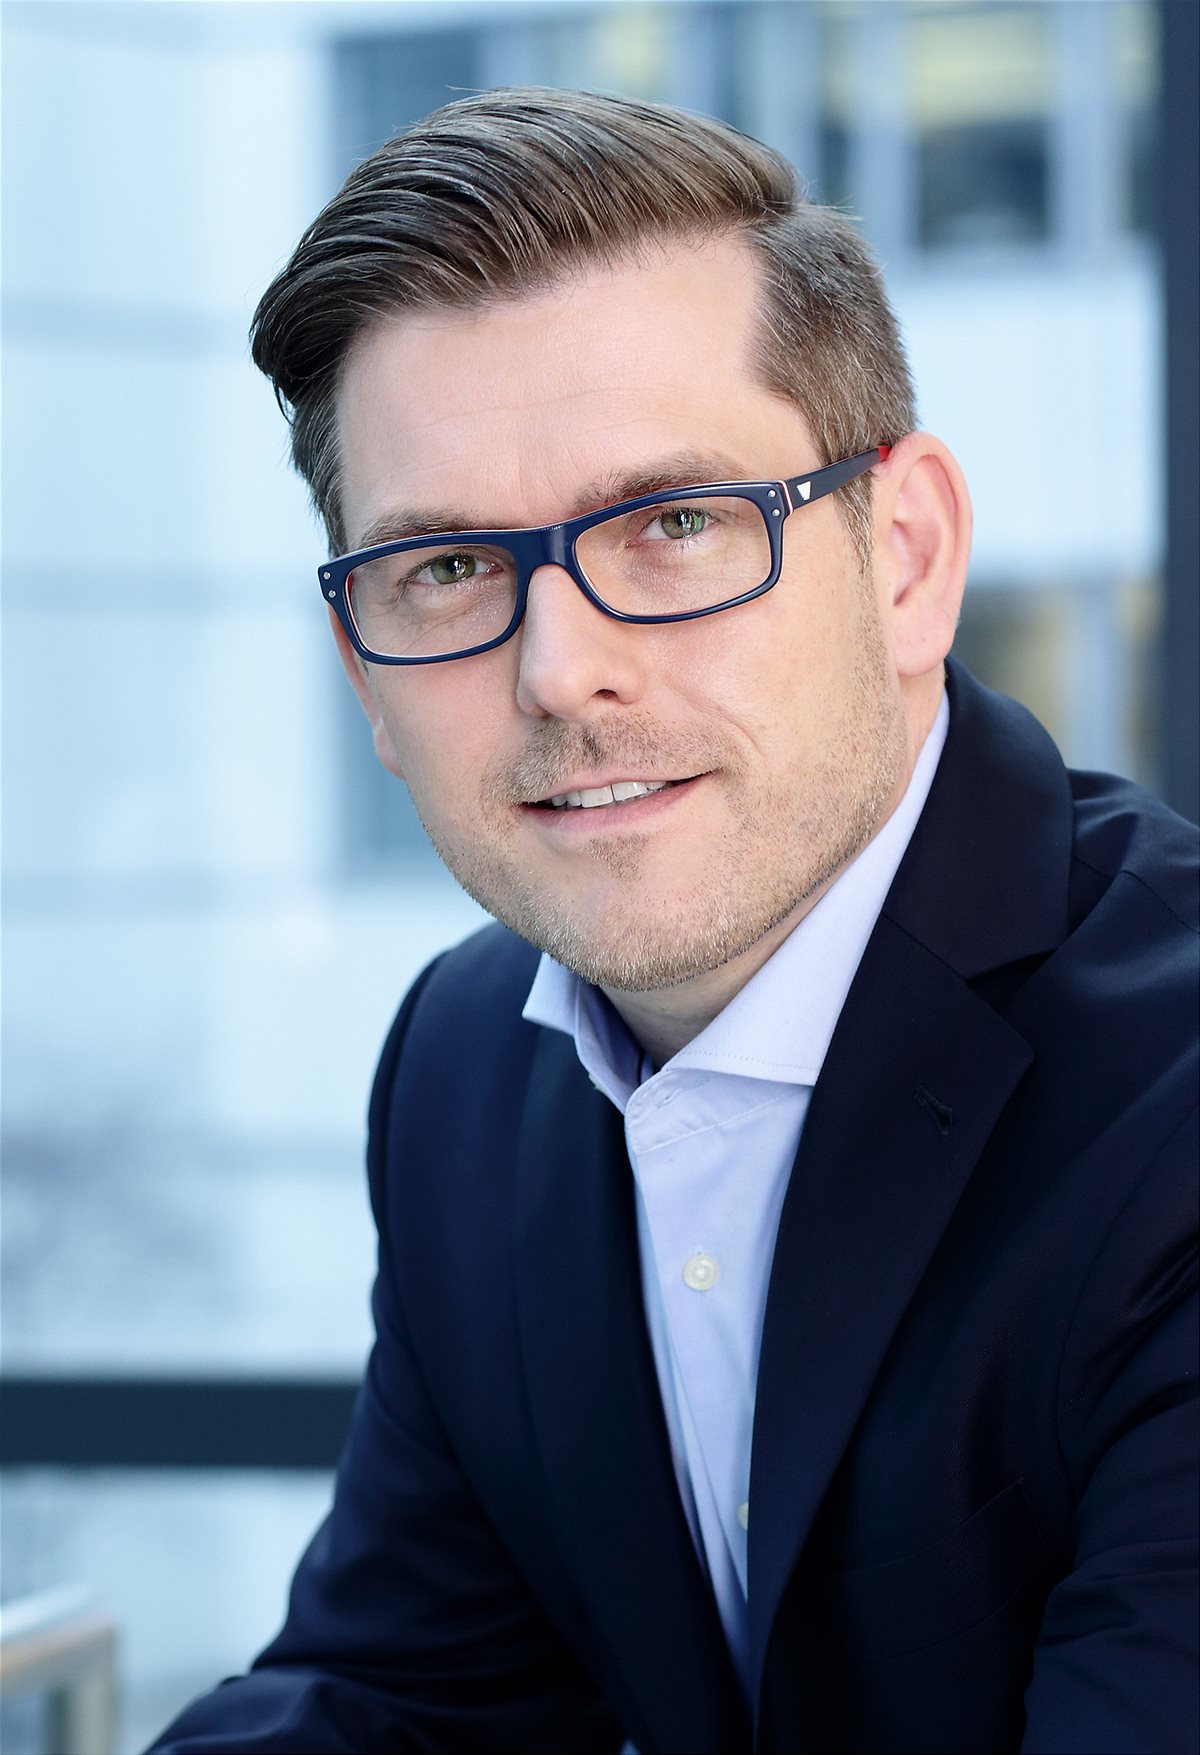 Wechsel bei Nestlé Österreich - Mirko Dörr wechselt in die Geschäftsleitung Kaffee und Heißgetränke zu Nestlé nach Frankfurt